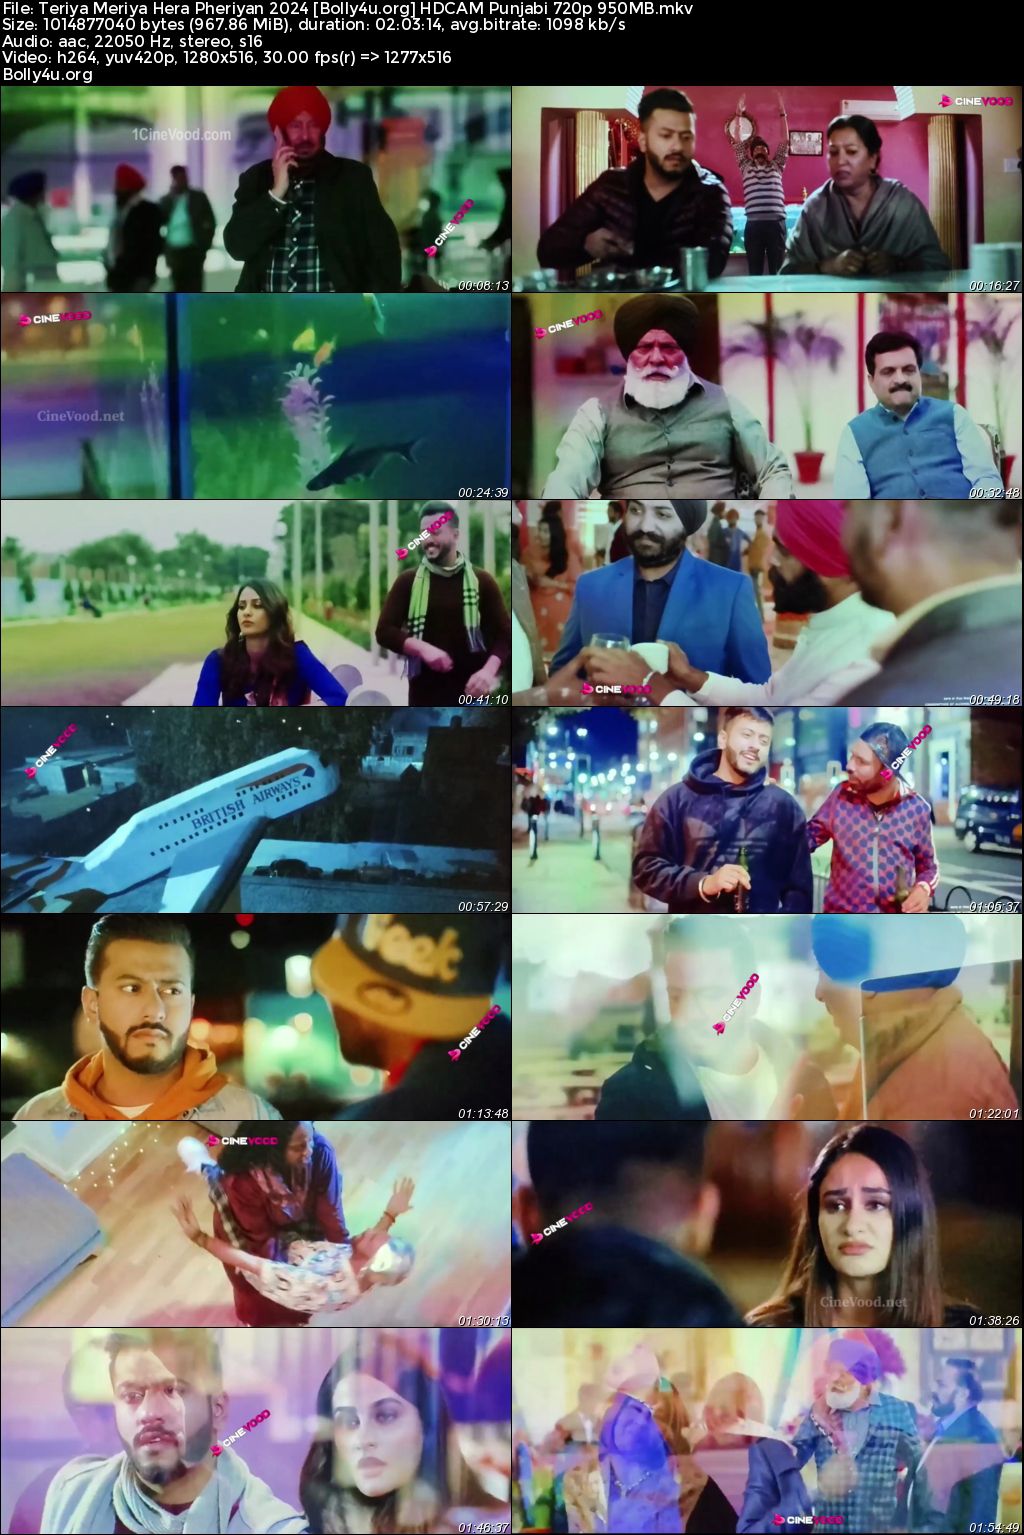 Teriya Meriya Hera Pheriyan 2024 HDCAM Punjabi Full Movie Download 1080p 720p 480p